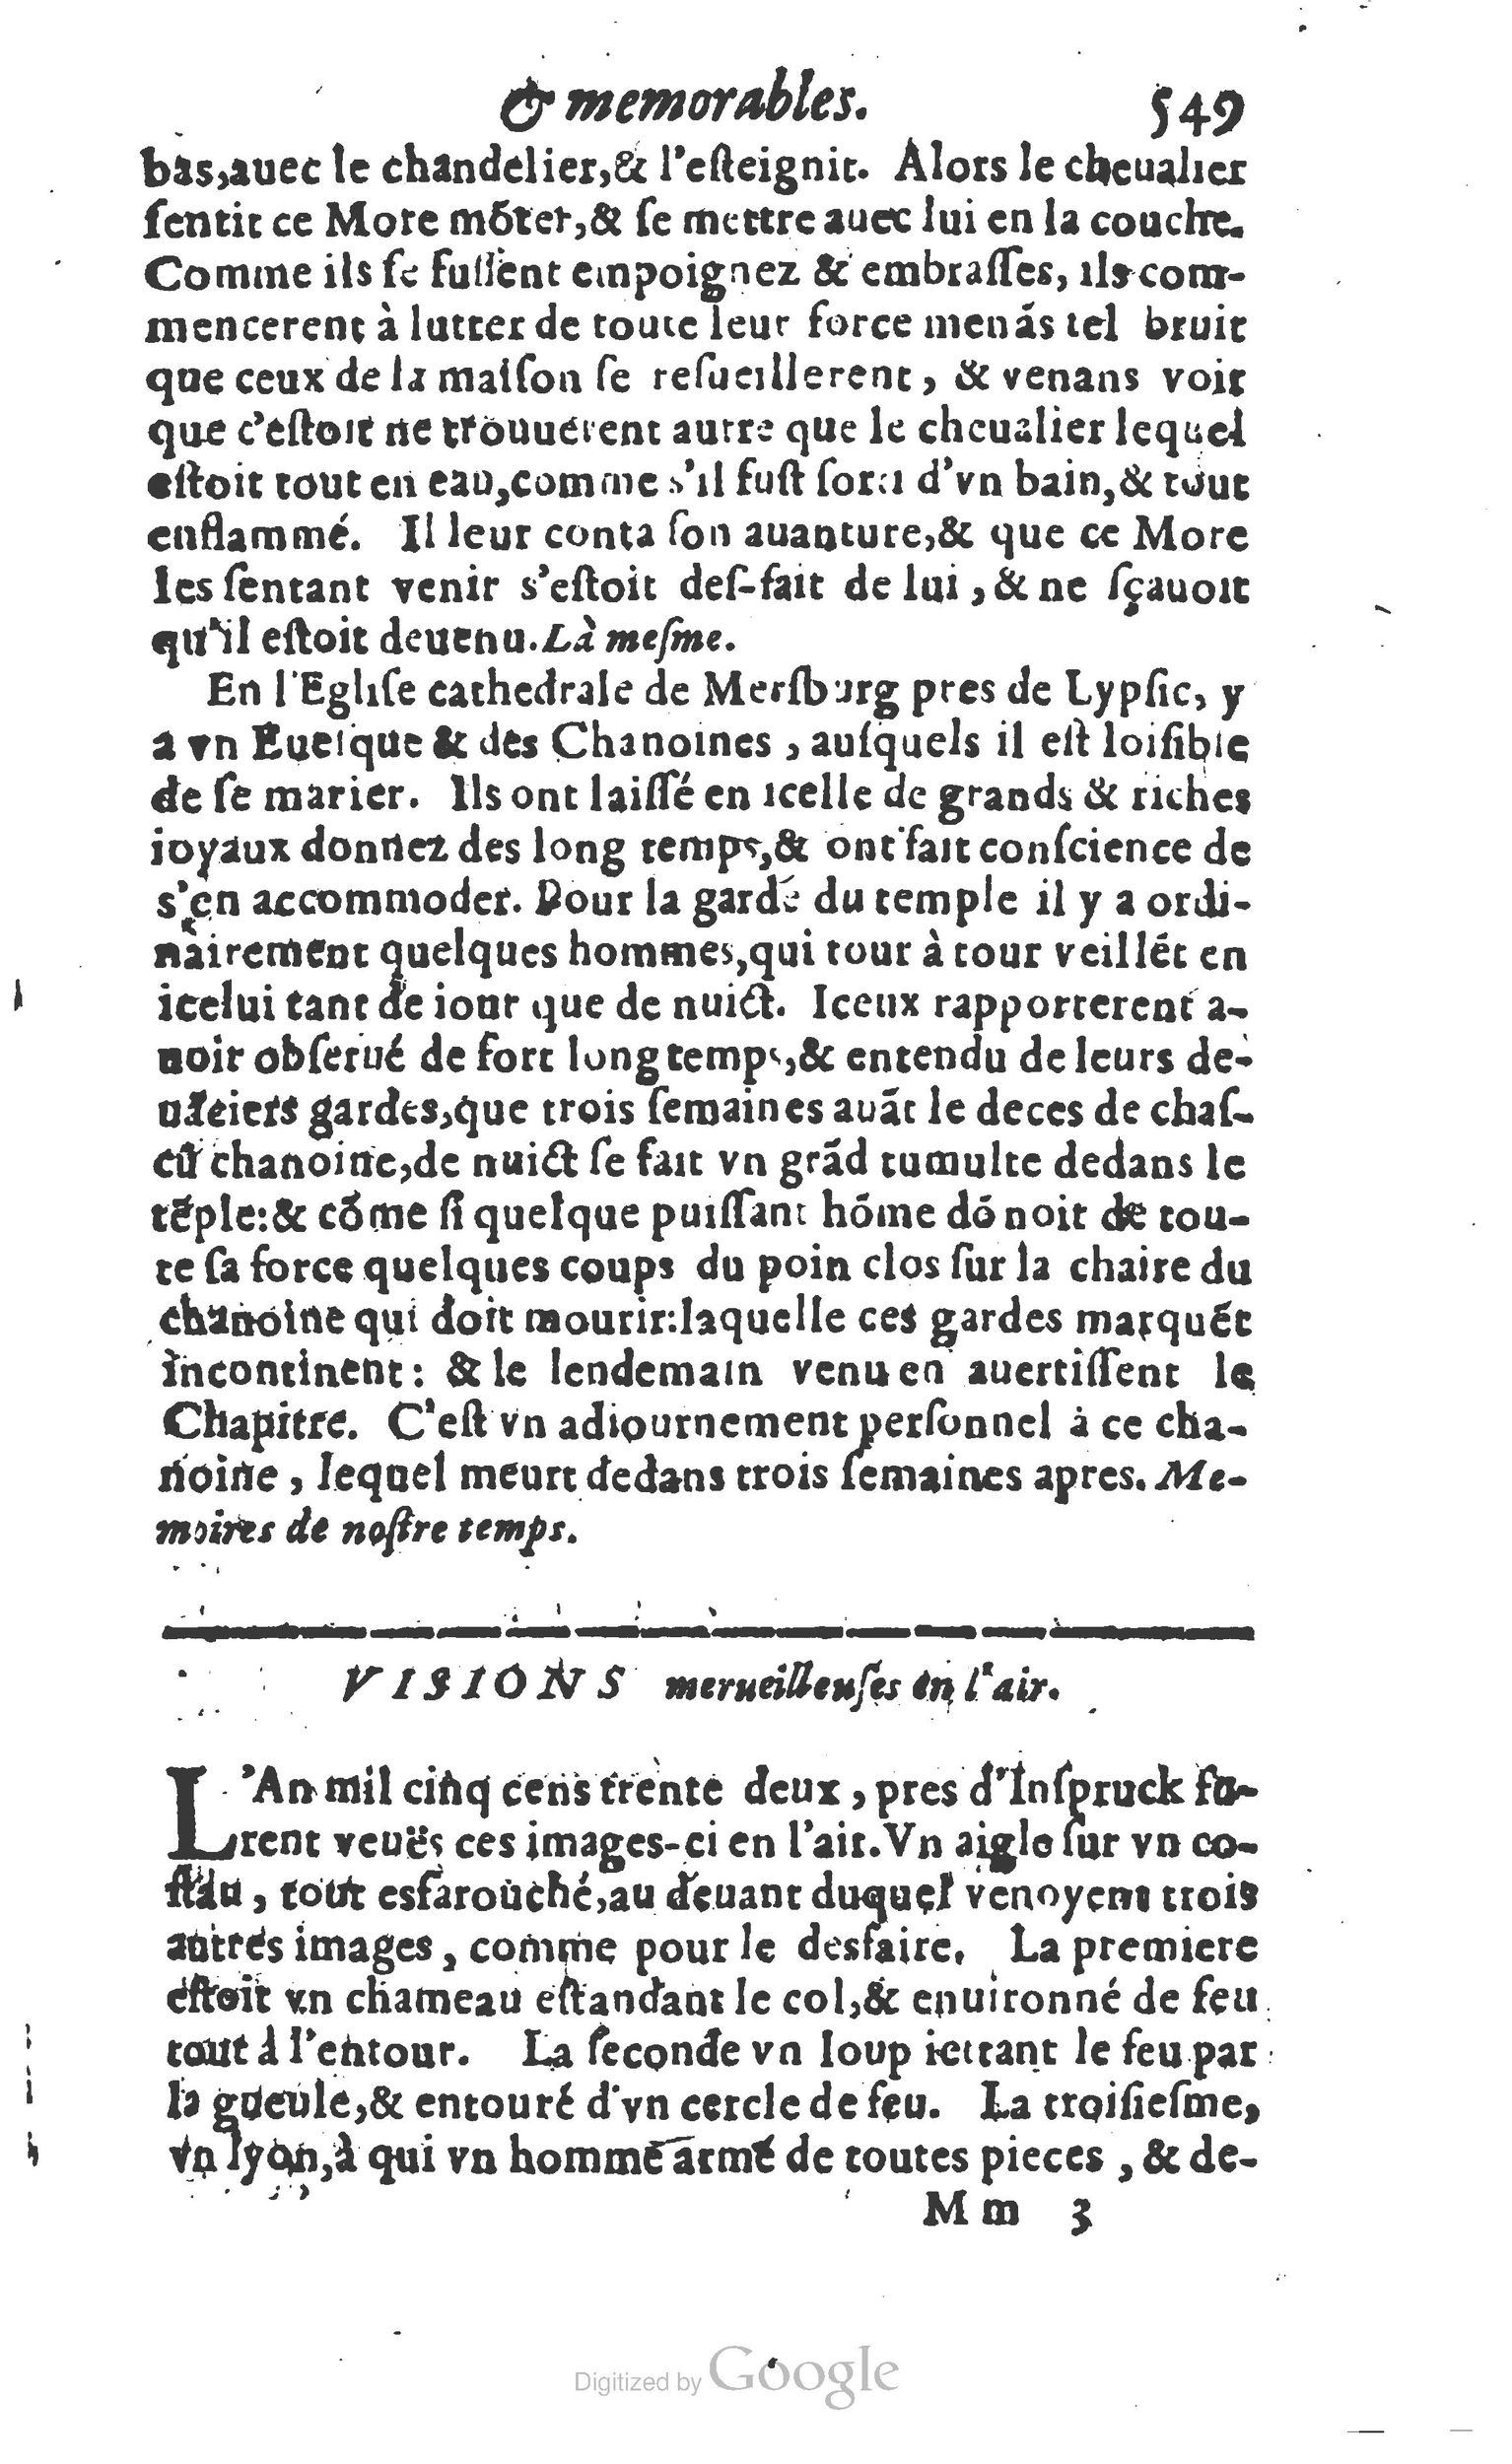 1610 Trésor d’histoires admirables et mémorables de nostre temps Marceau Princeton_Page_0570.jpg